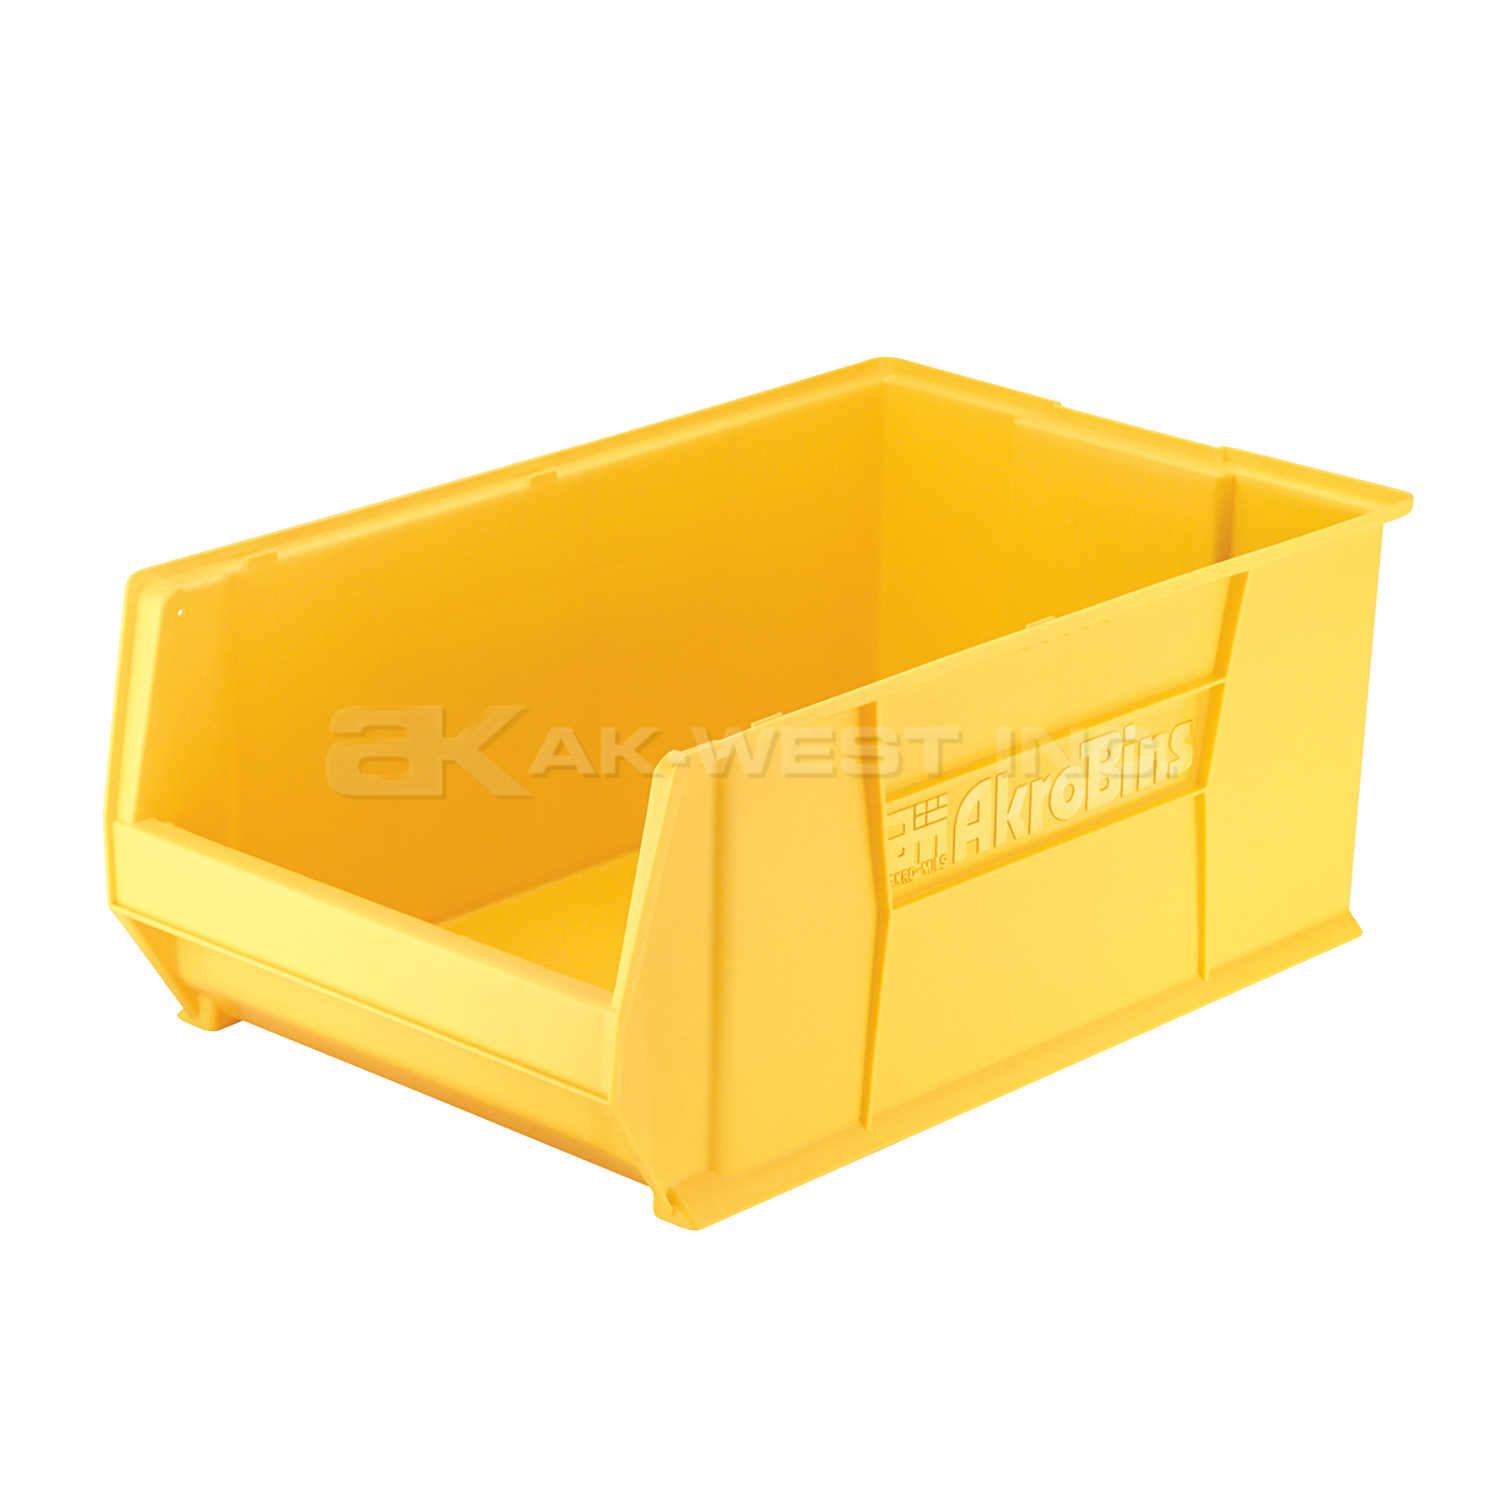 Yellow, 29-1/4" x 18-3/8" x 12" Stacking Shelf Bin (1 Per Carton)